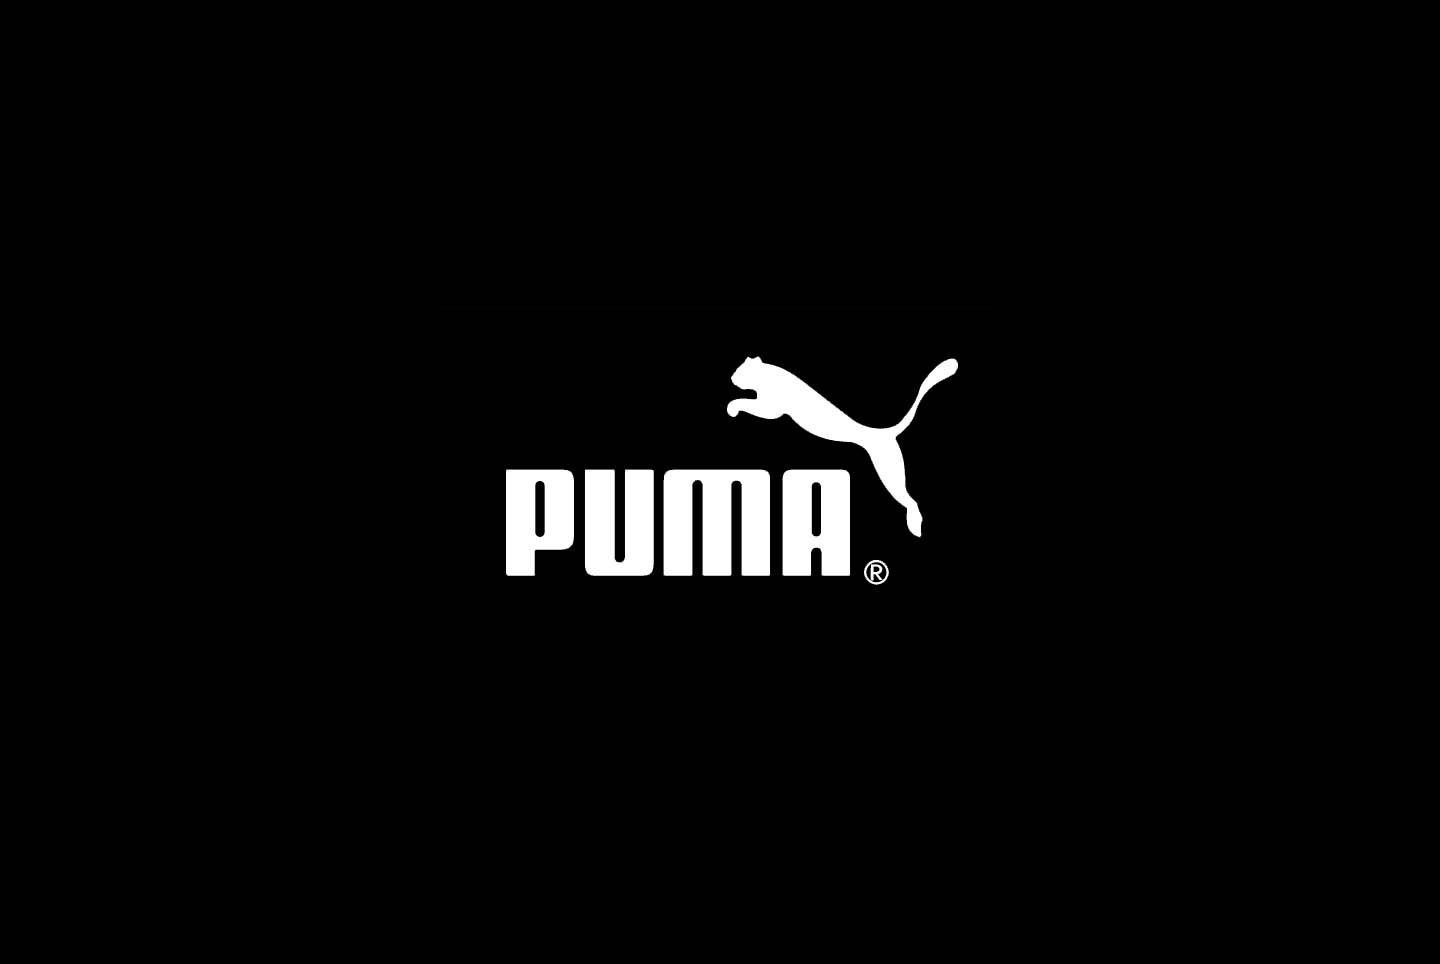 hd puma logo wallpaper